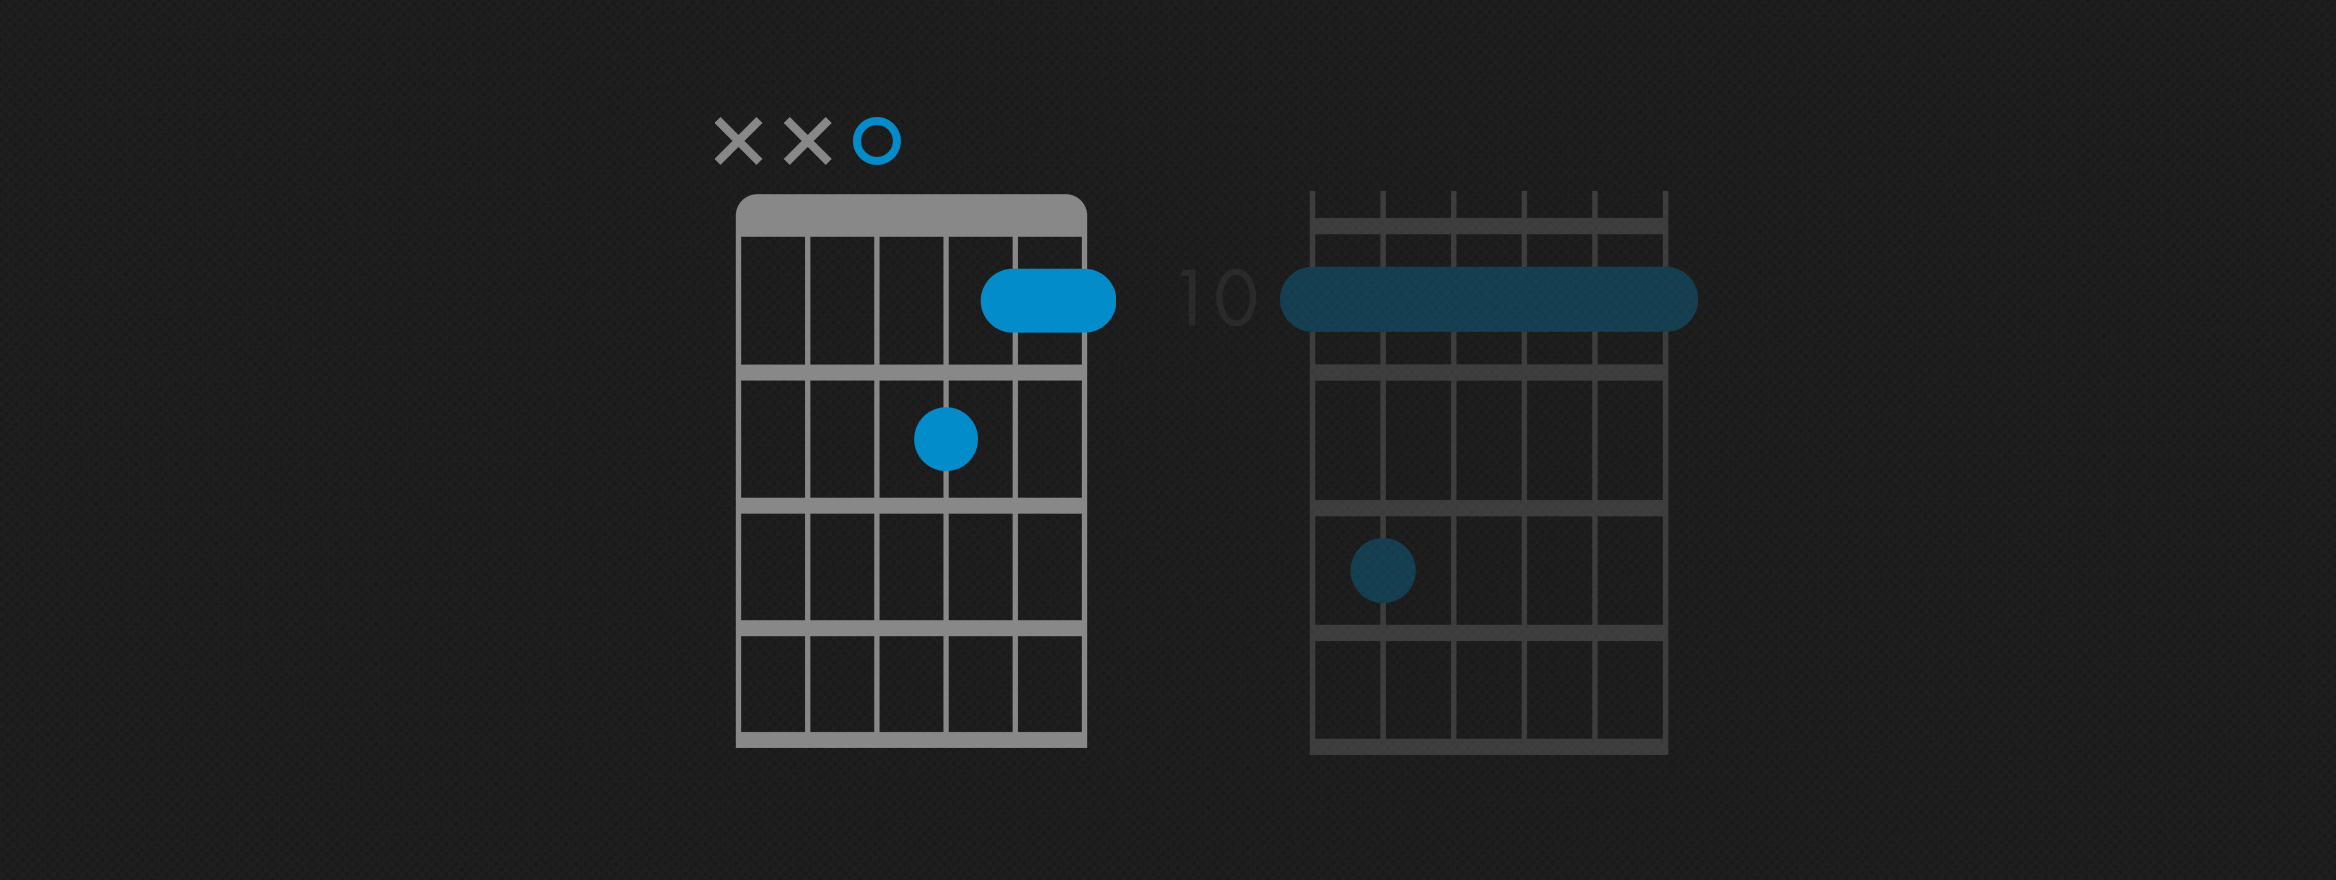 Dm7 Basic Guitar Chord Chart Icon: vector de stock (libre de regalías) 1422526055 | Shutterstock